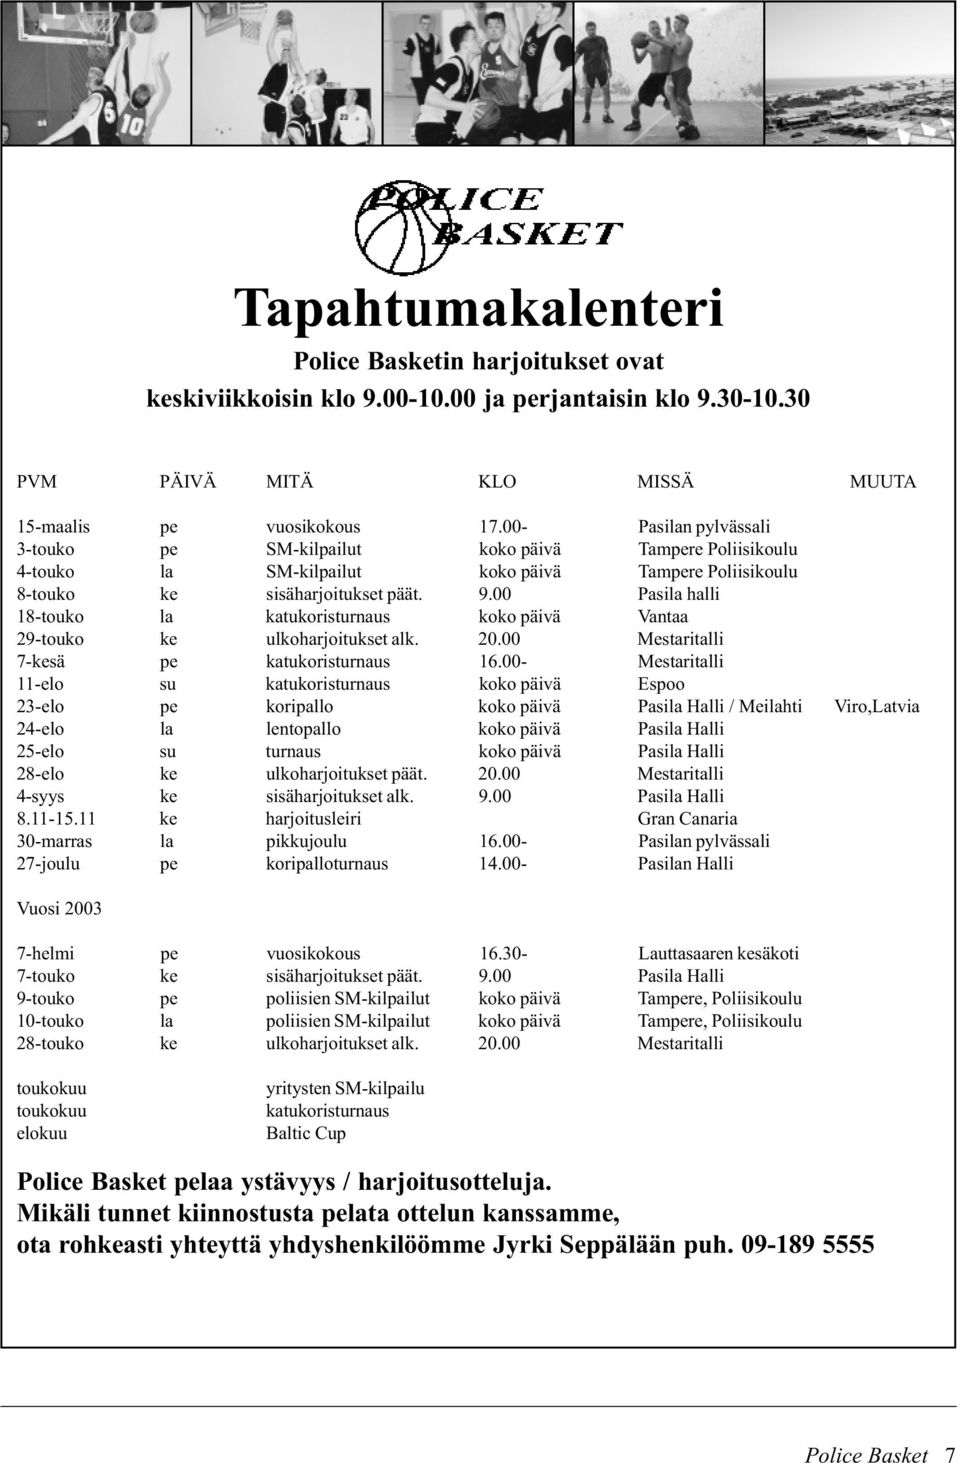 00 Pasila halli 18-touko la katukoristurnaus koko päivä Vantaa 29-touko ke ulkoharjoitukset alk. 20.00 Mestaritalli 7-kesä pe katukoristurnaus 16.